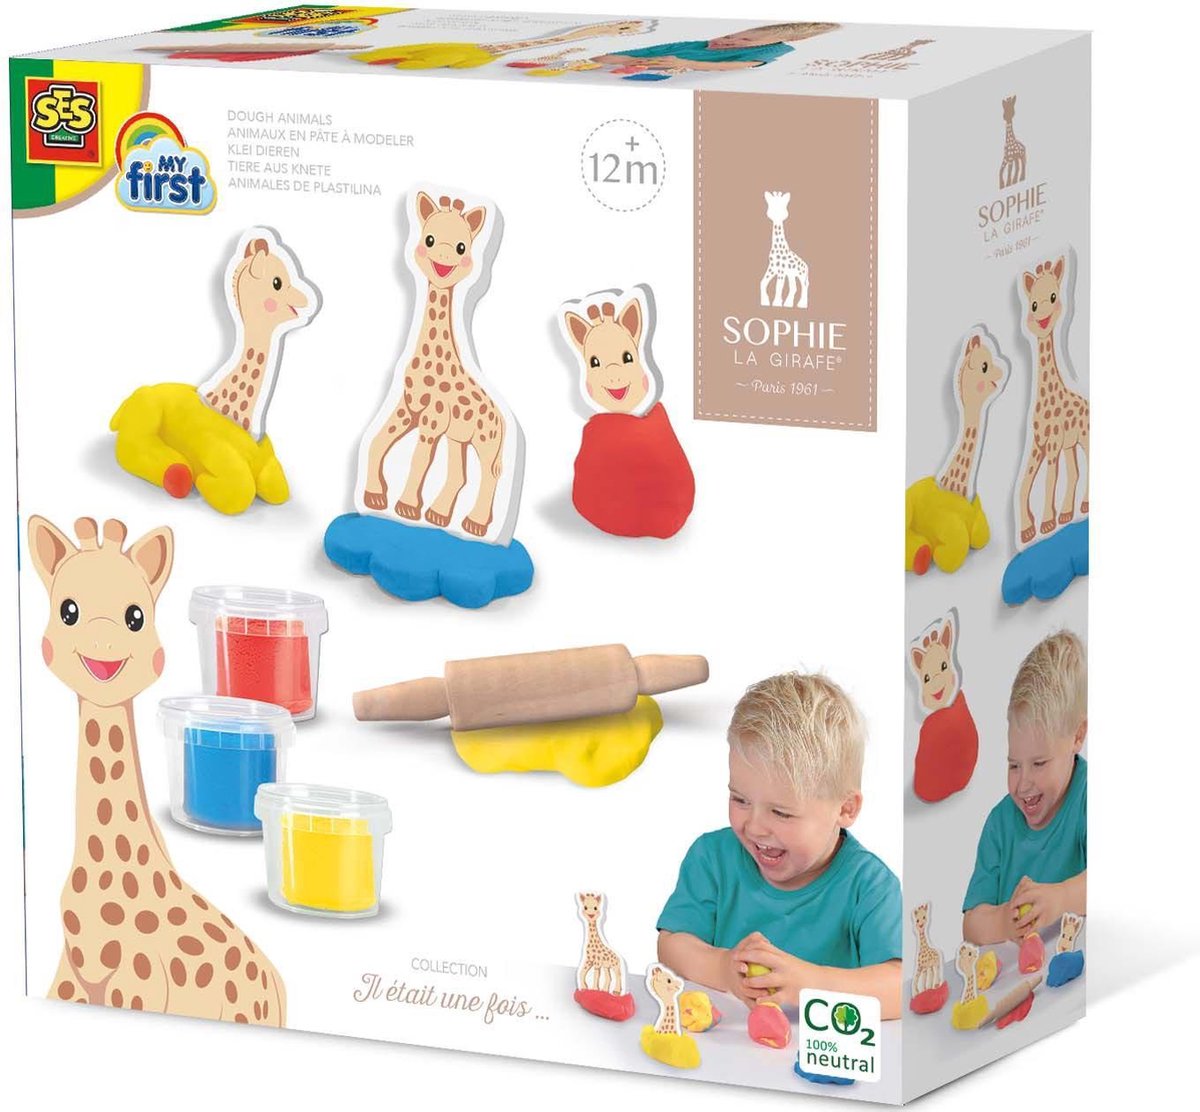 SES - Sophie la Girafe - Klei dieren - 3 kleuren klei - 6 figuren van foam  - inclusief... | bol.com